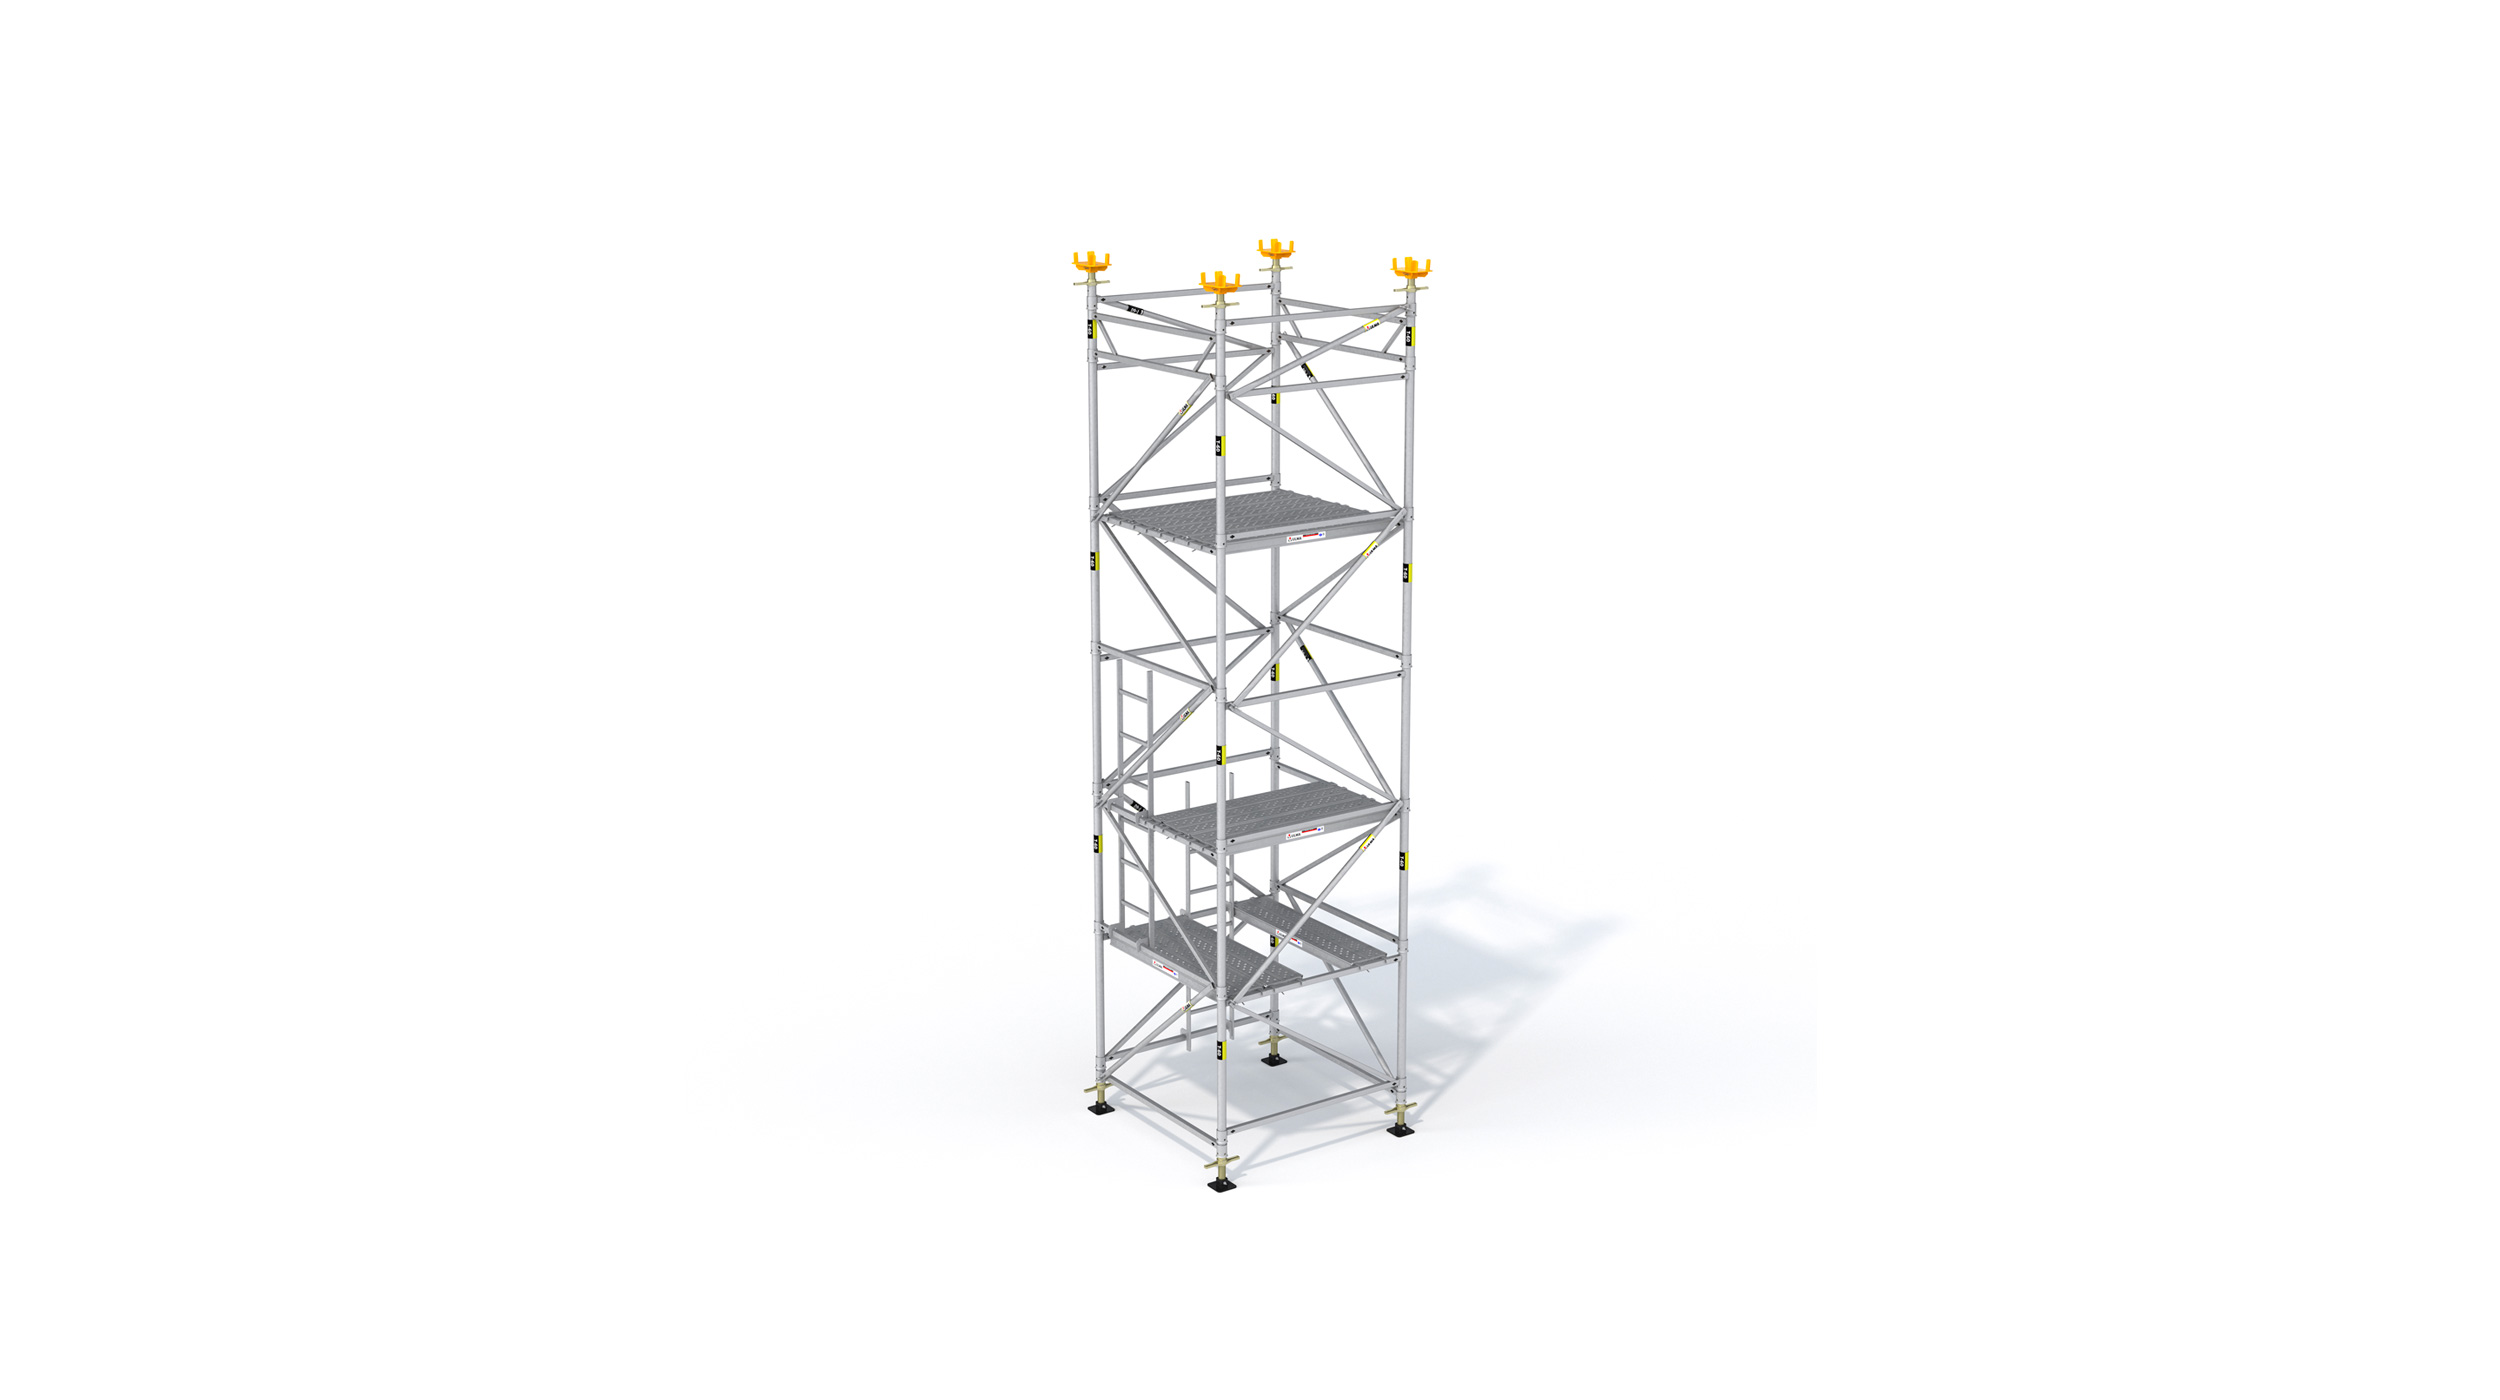 Nízkonákladová podpůrná věž zaměřená speciálně na podepření mostů a specifických staveb v odvětví průmyslových a pozemních staveb.